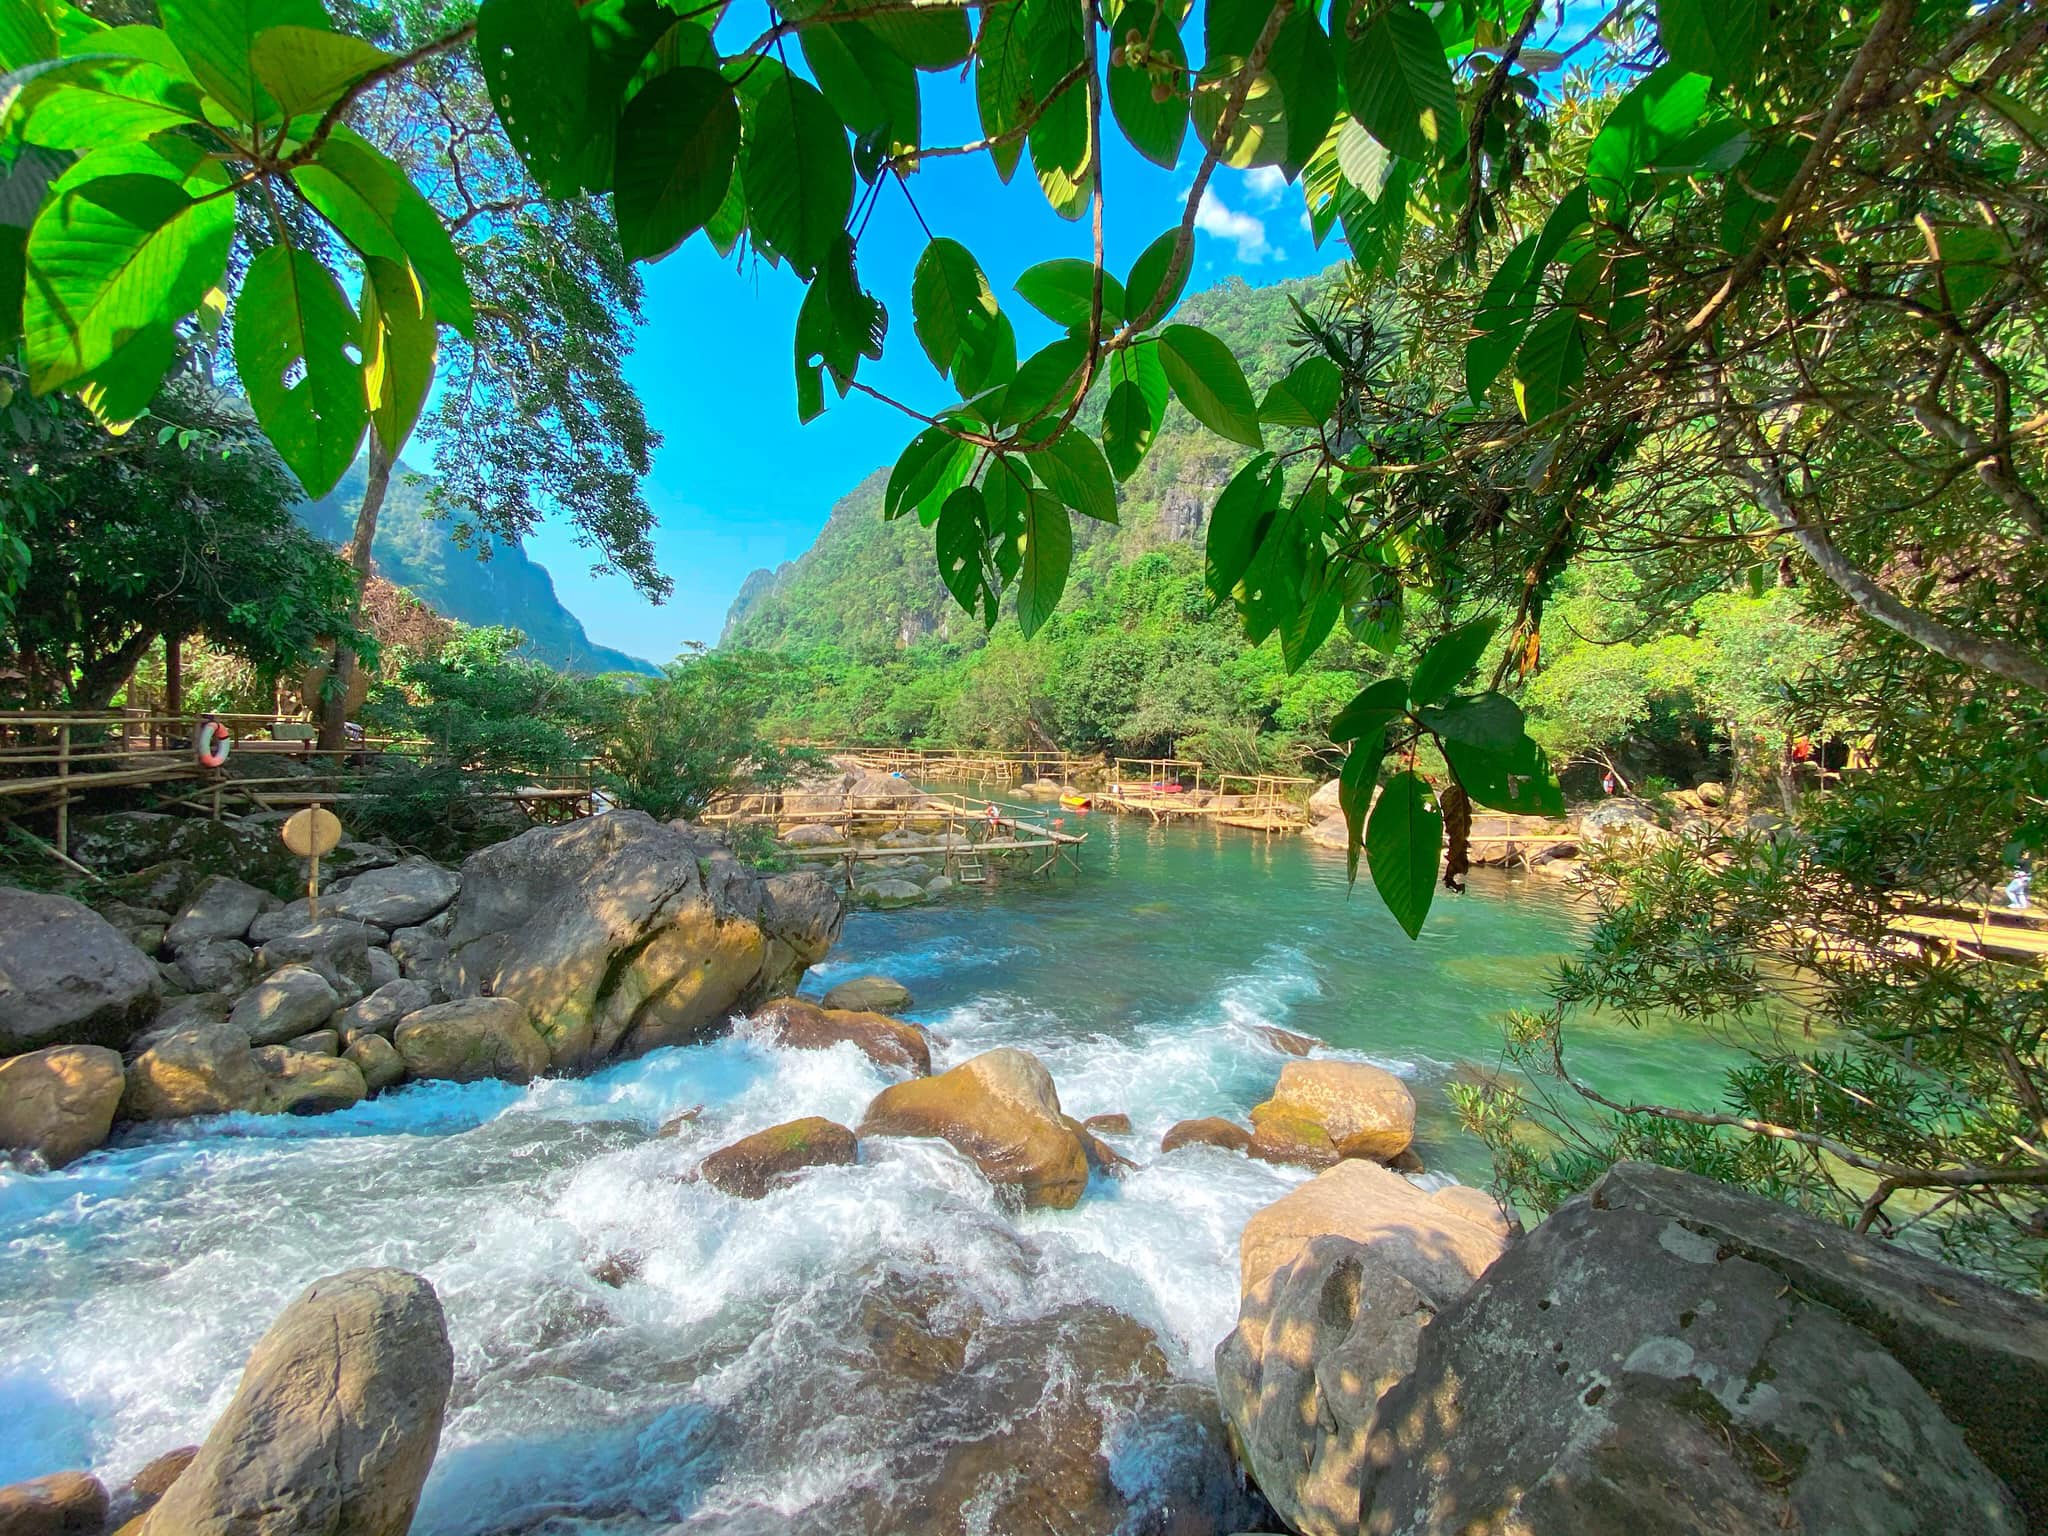 Suối nước Moọc, Quảng Bình